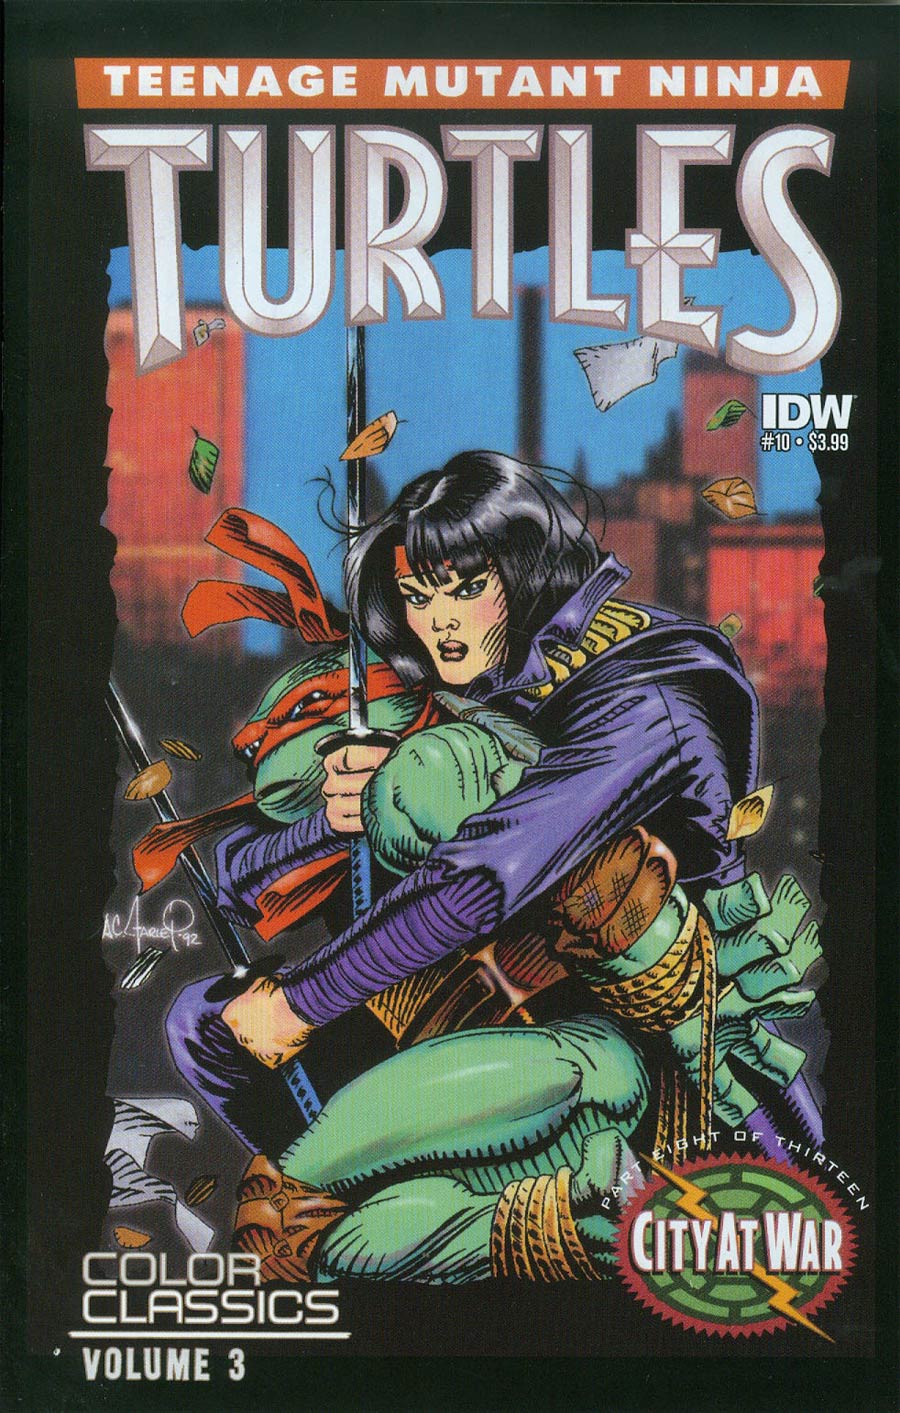 Teenage Mutant Ninja Turtles Color Classics Vol 3 #10